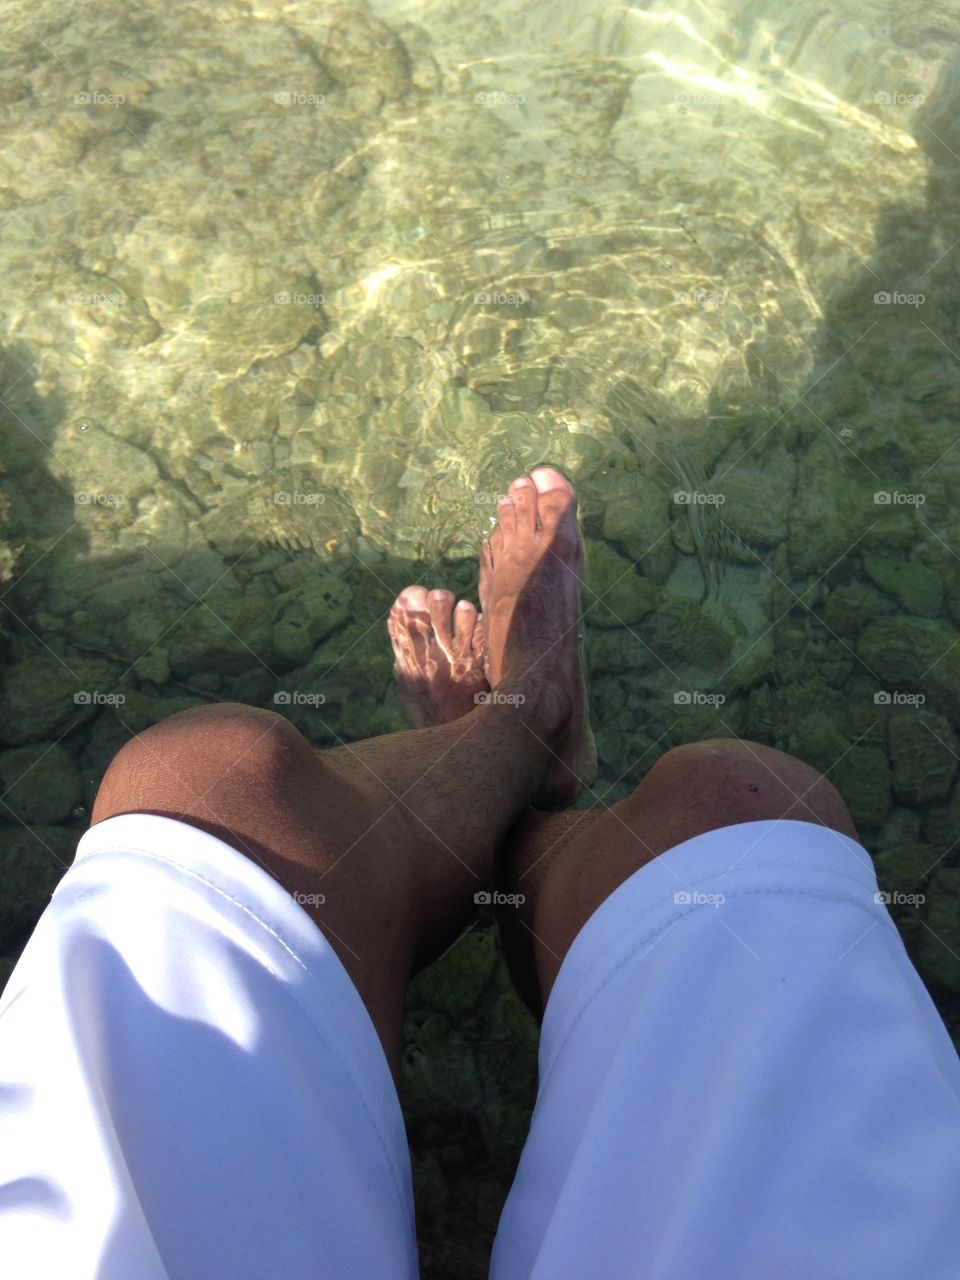 #pensando #descanzar #piernas #pie #short #agua #beach 